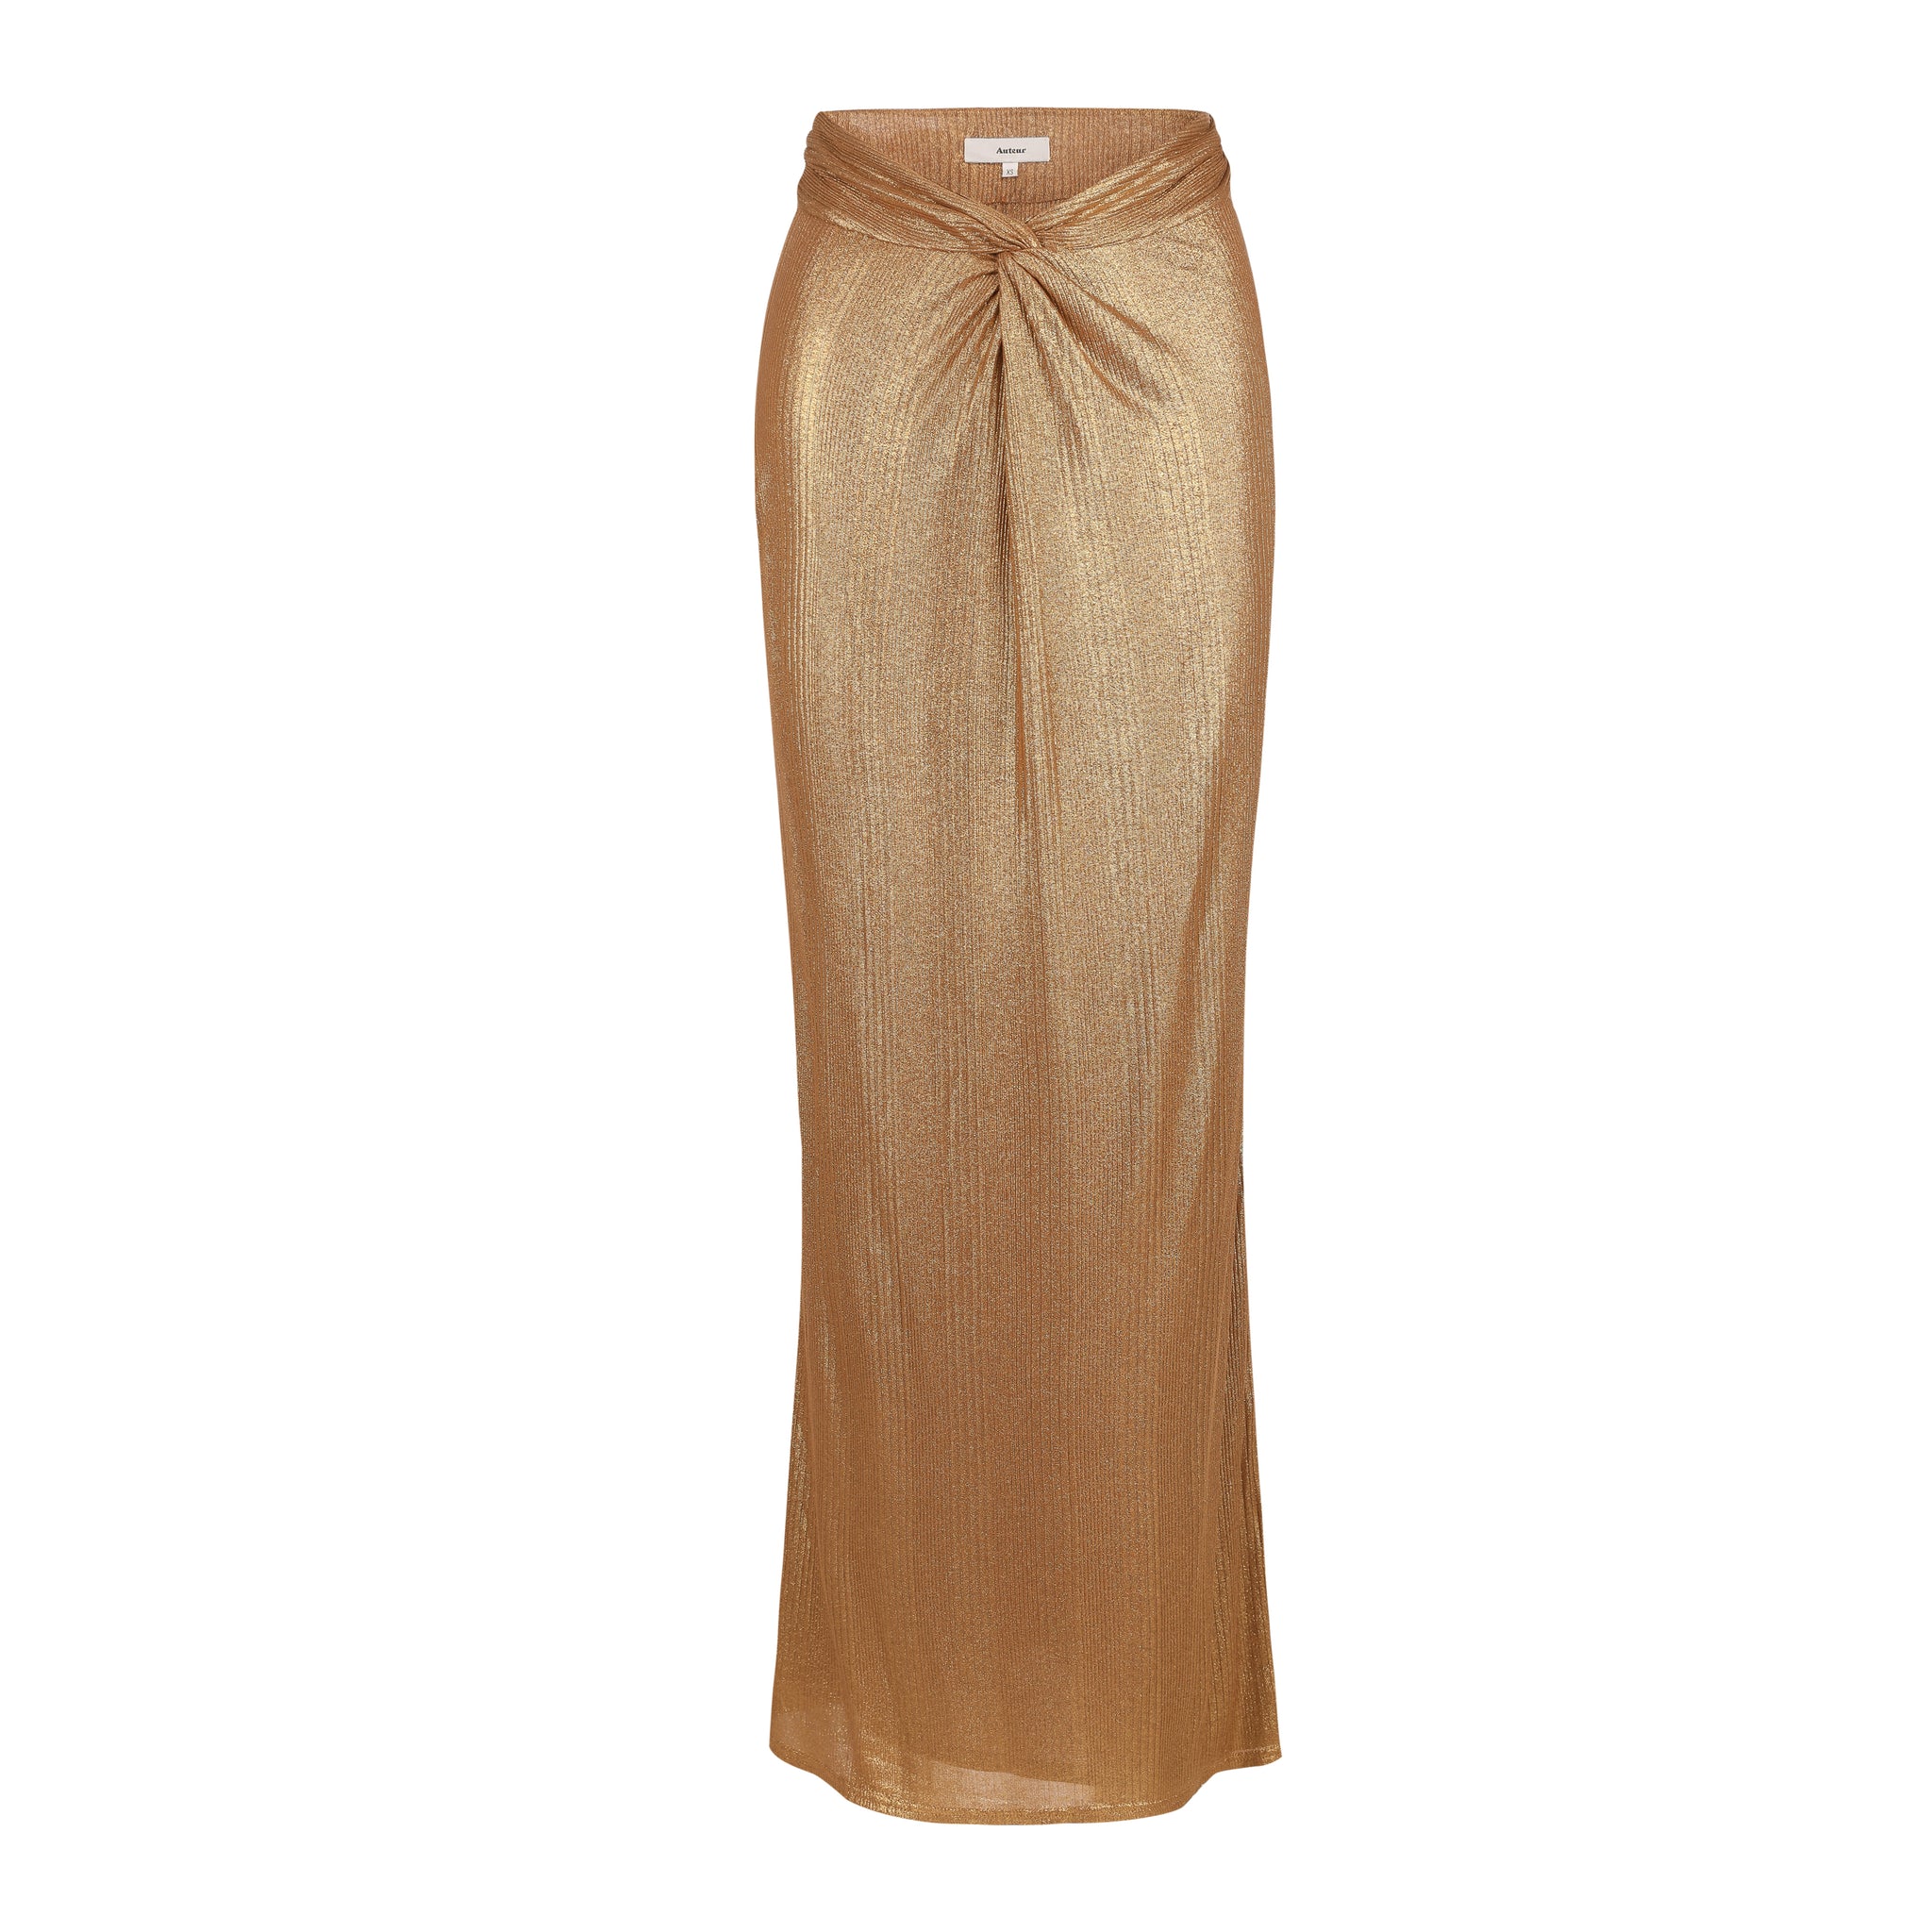 Uma Twisted Skirt - Laminated Gold Jersey